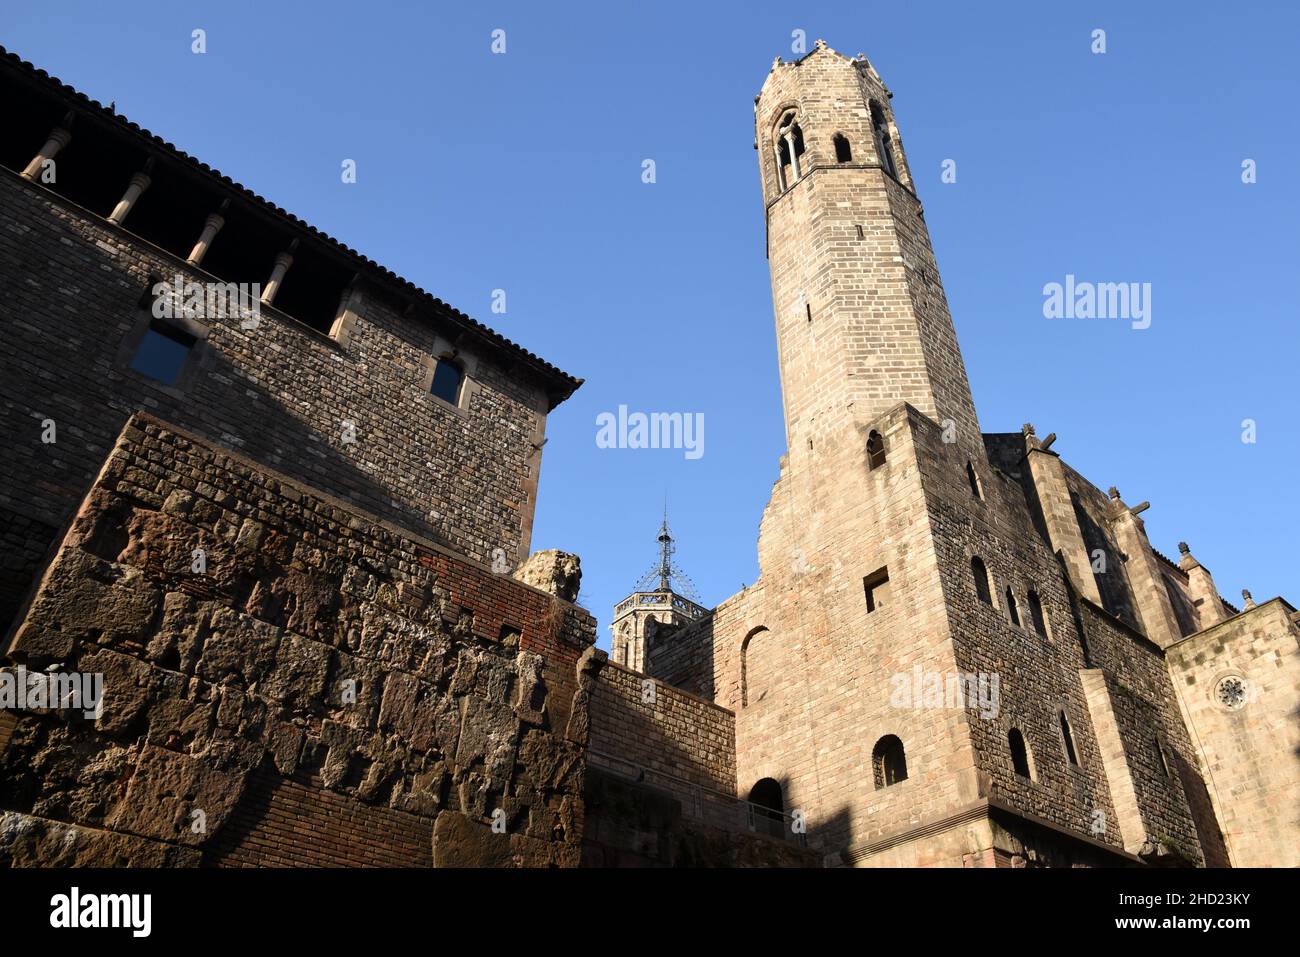 Espagne, Barcelone, l'église Sainte Agathe avec sa Tour gothique et les vestiges de l'ancienne muraille romaine de la ville. Stockfoto